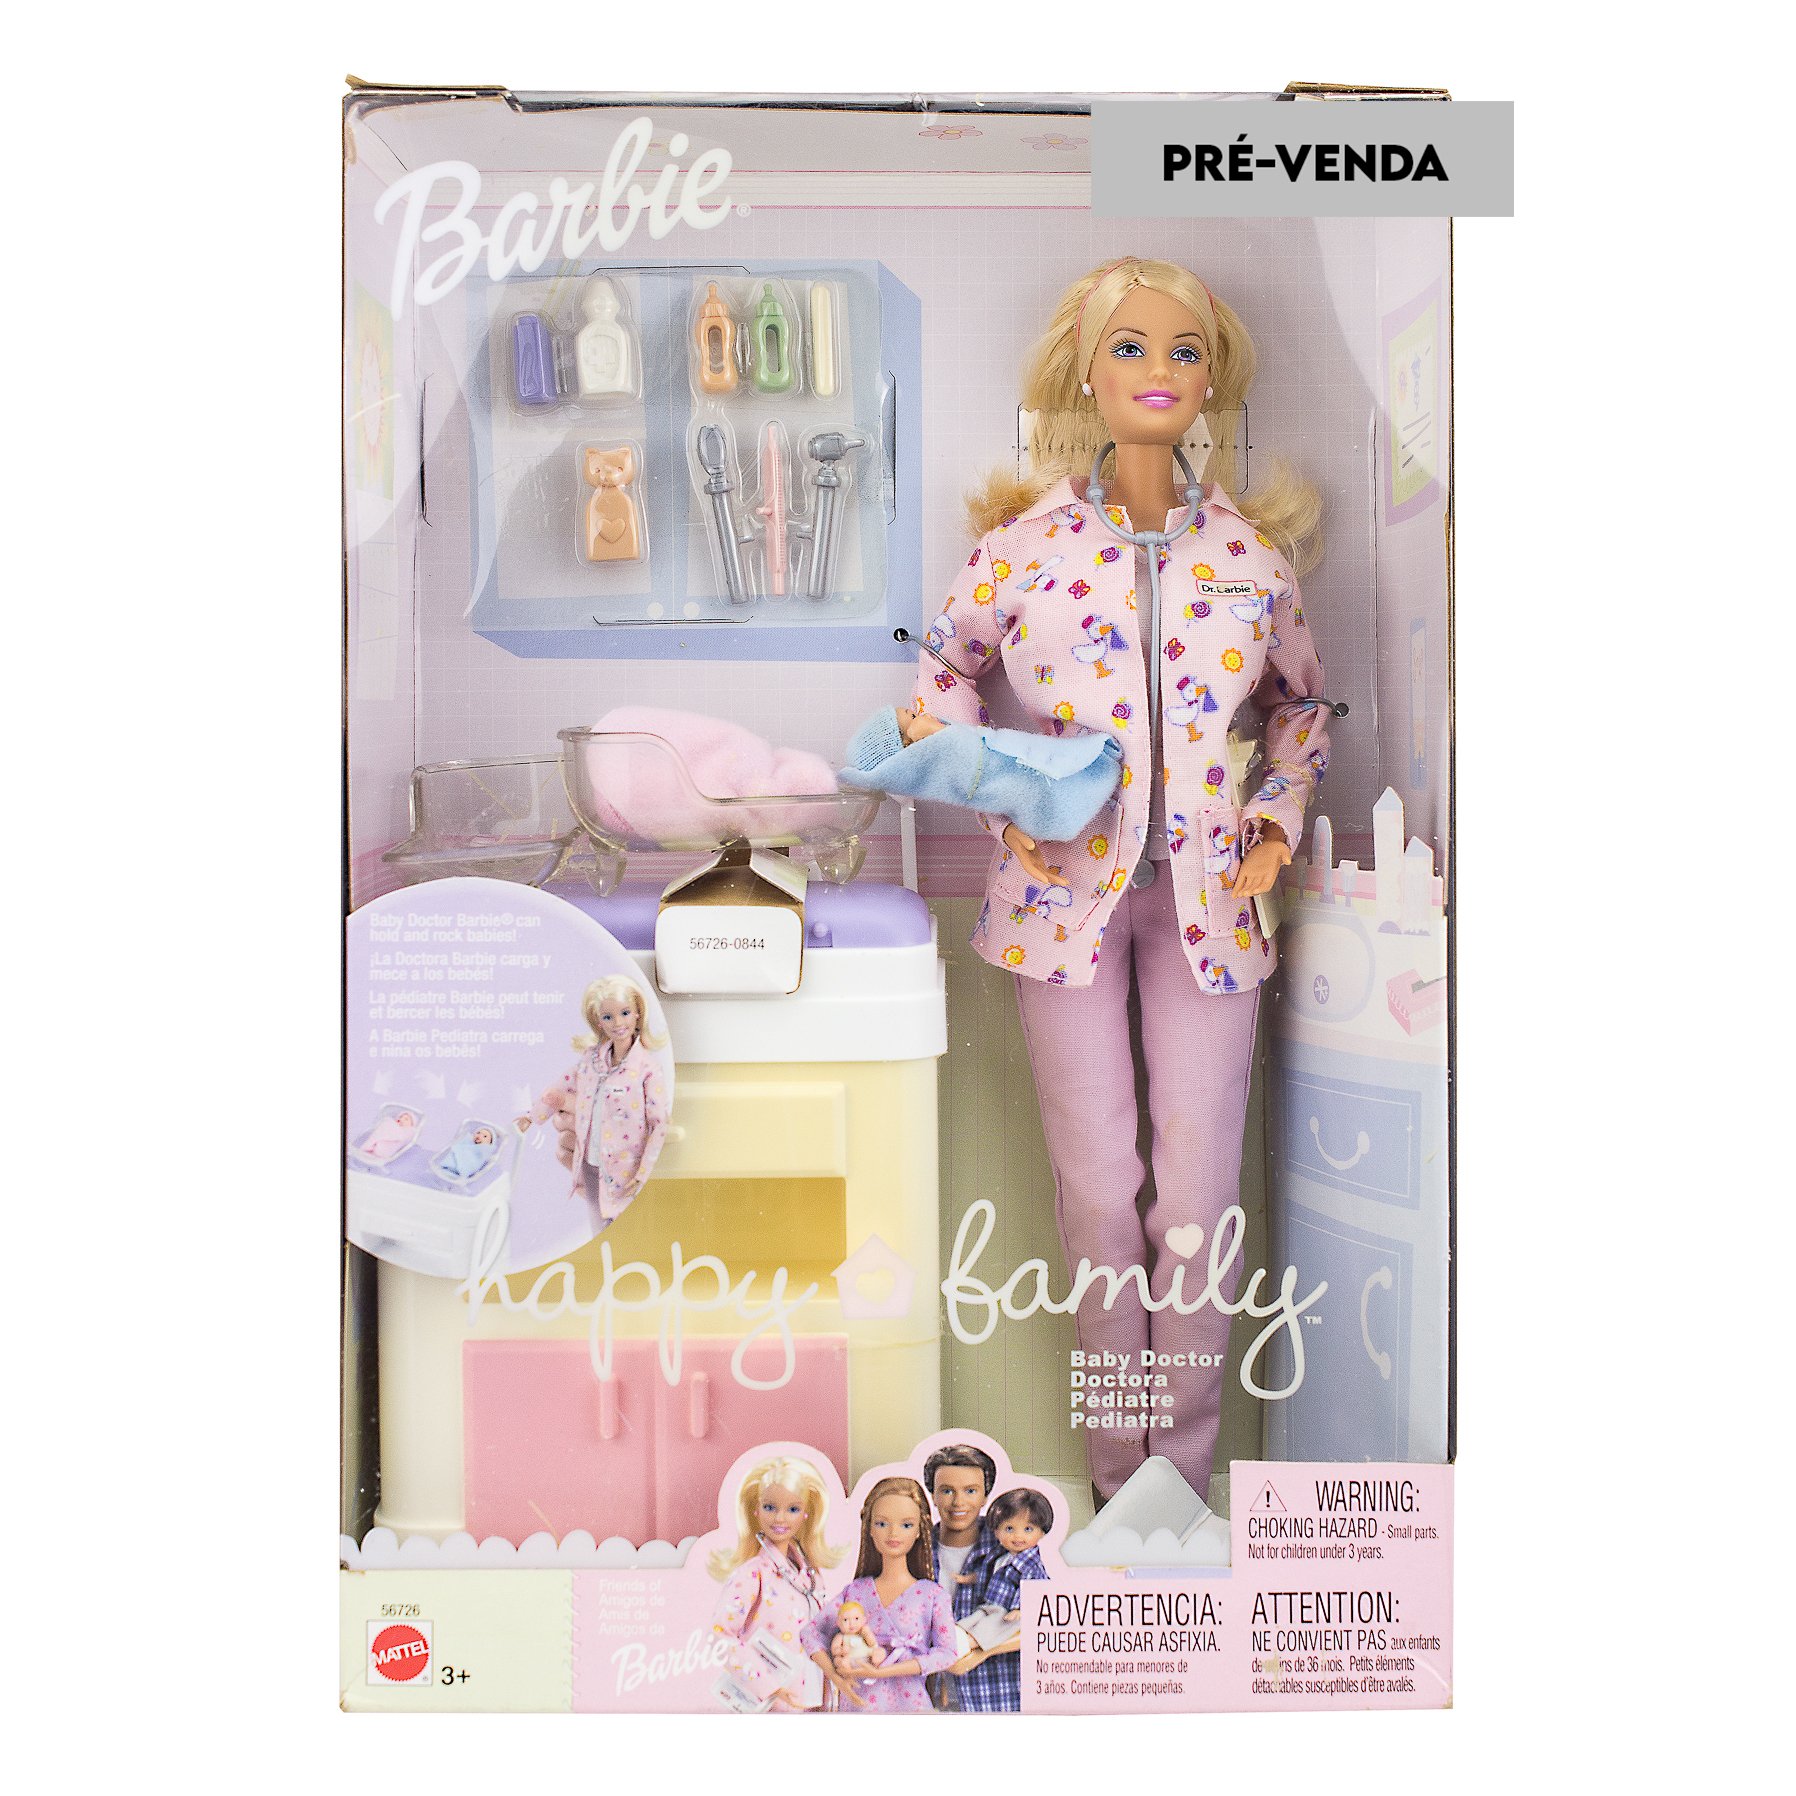 Compra online de 1/6 30cm bonecas roupas bebê boneca estilo